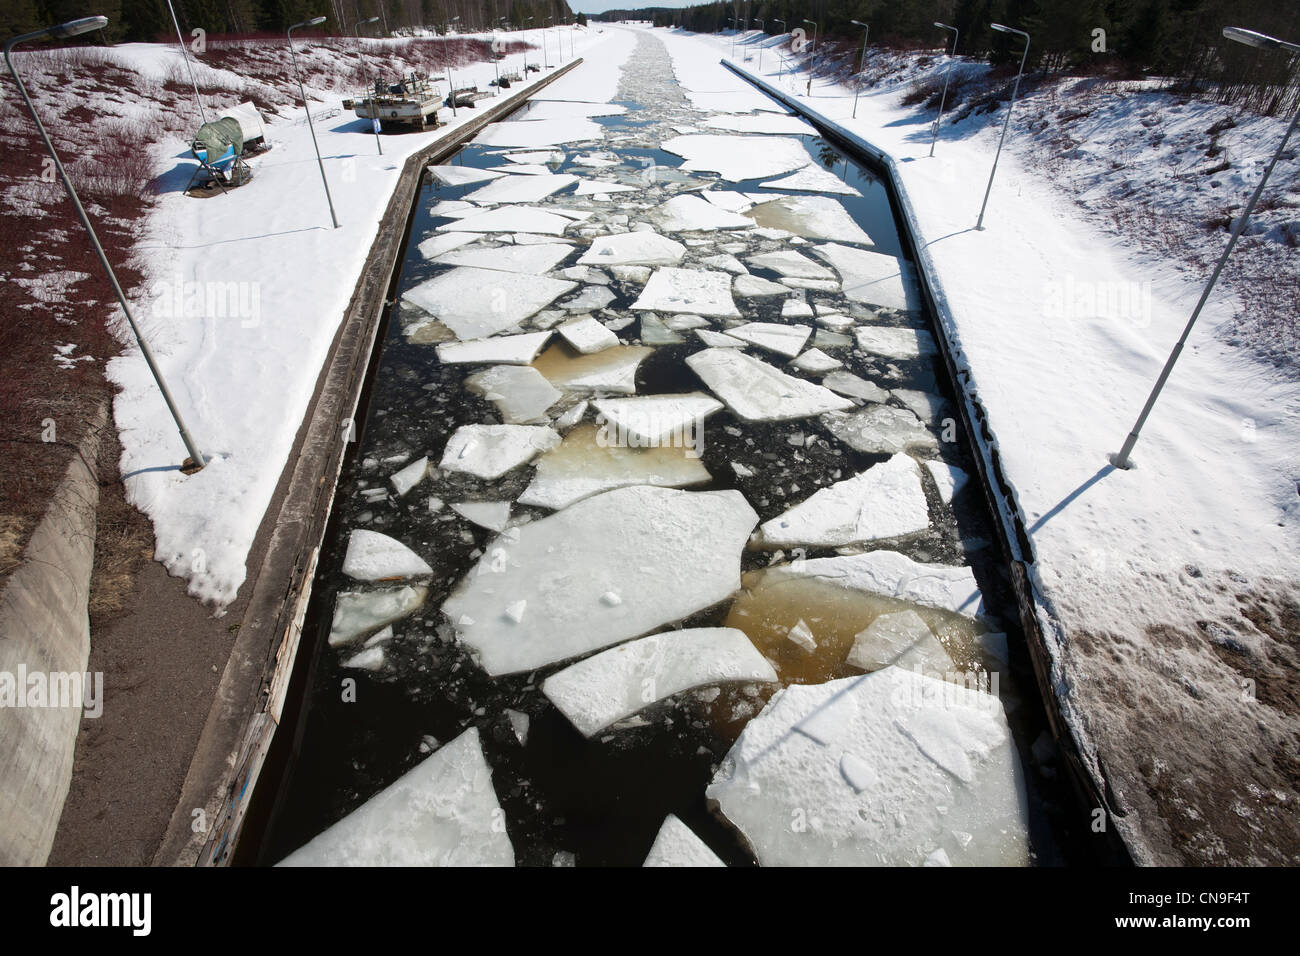 Fiche technique de la glace brisée dans le canal de Saimaa Lappeenranta, Finlande Banque D'Images